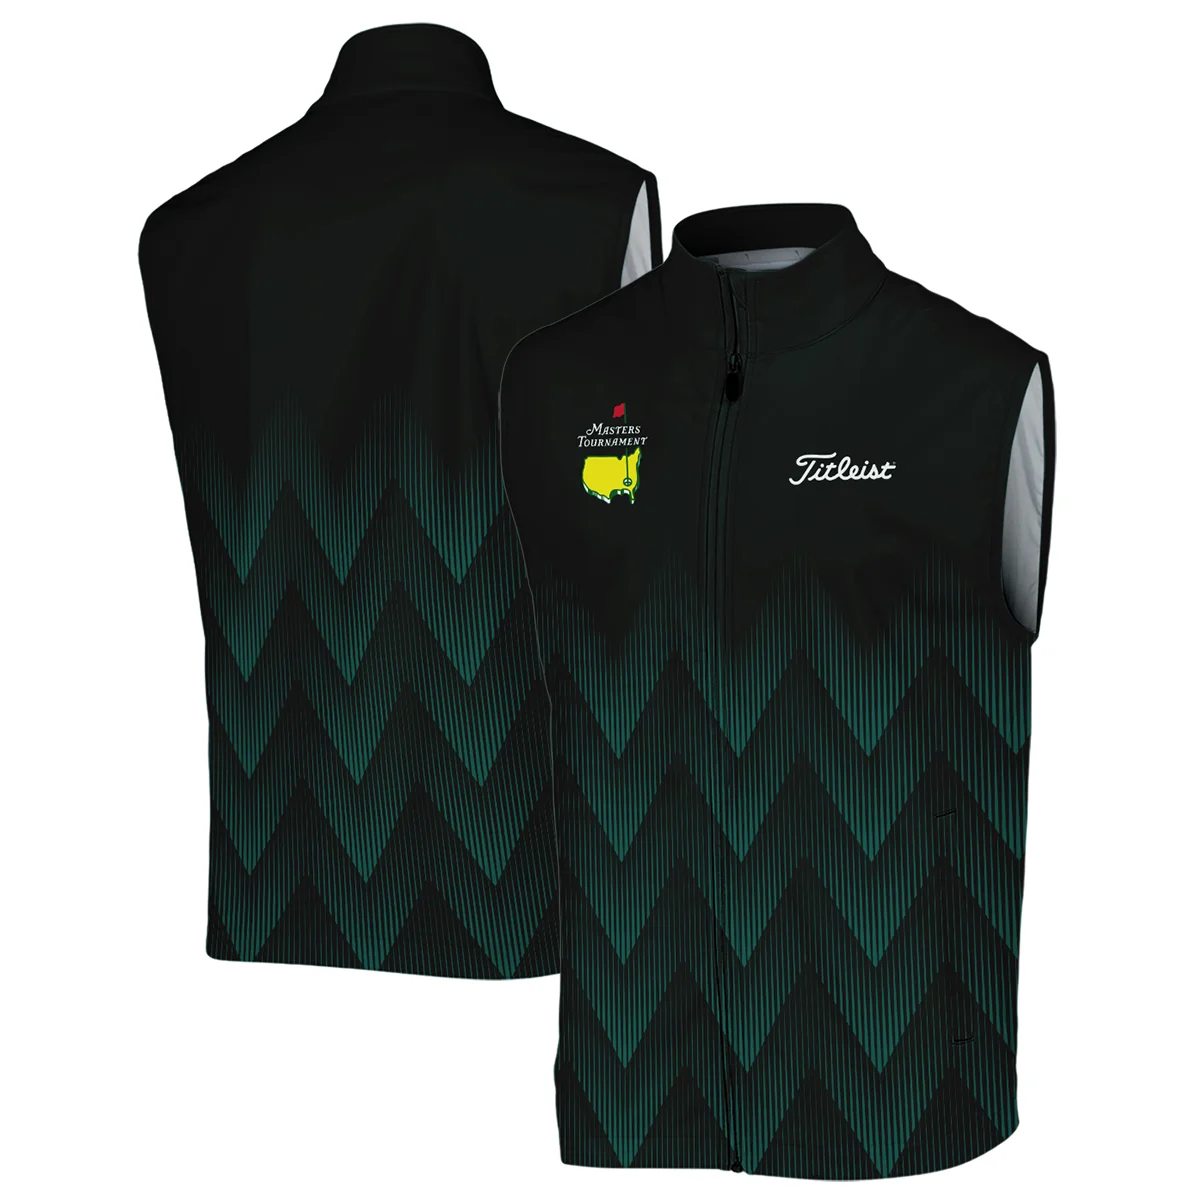 Masters Tournament Golf Titleist Zipper Hoodie Shirt Zigzag Pattern Dark Green Golf Sports All Over Print Zipper Hoodie Shirt